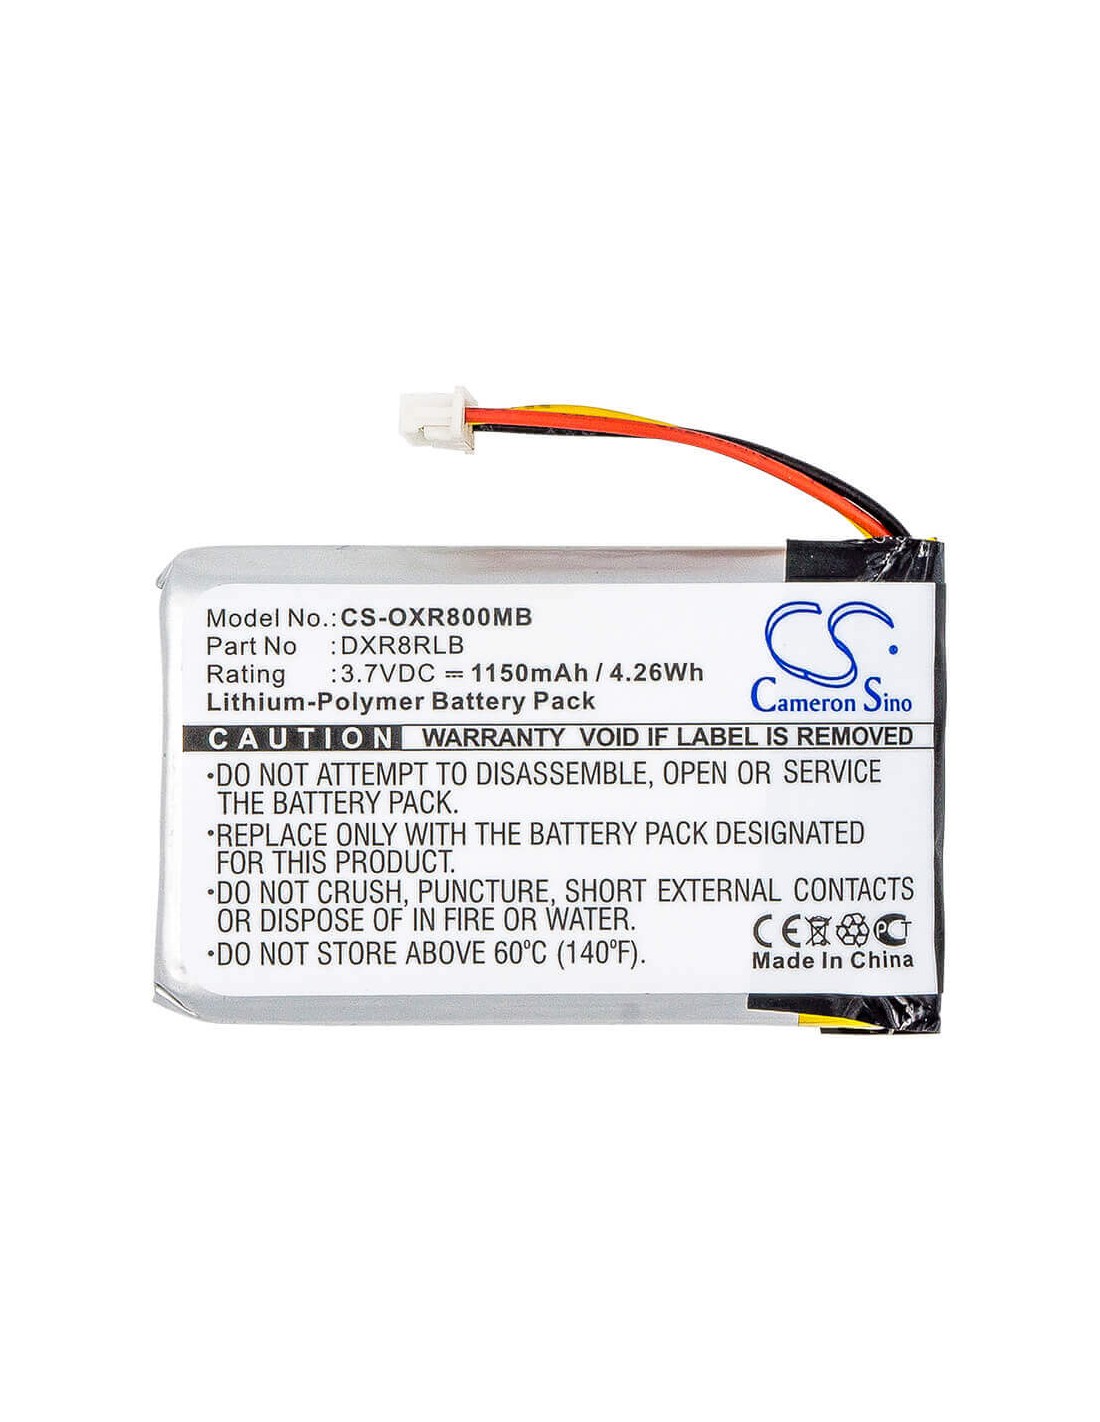 Battery for Infant Optics, Dxr-8 3.7V, 1150mAh - 4.26Wh